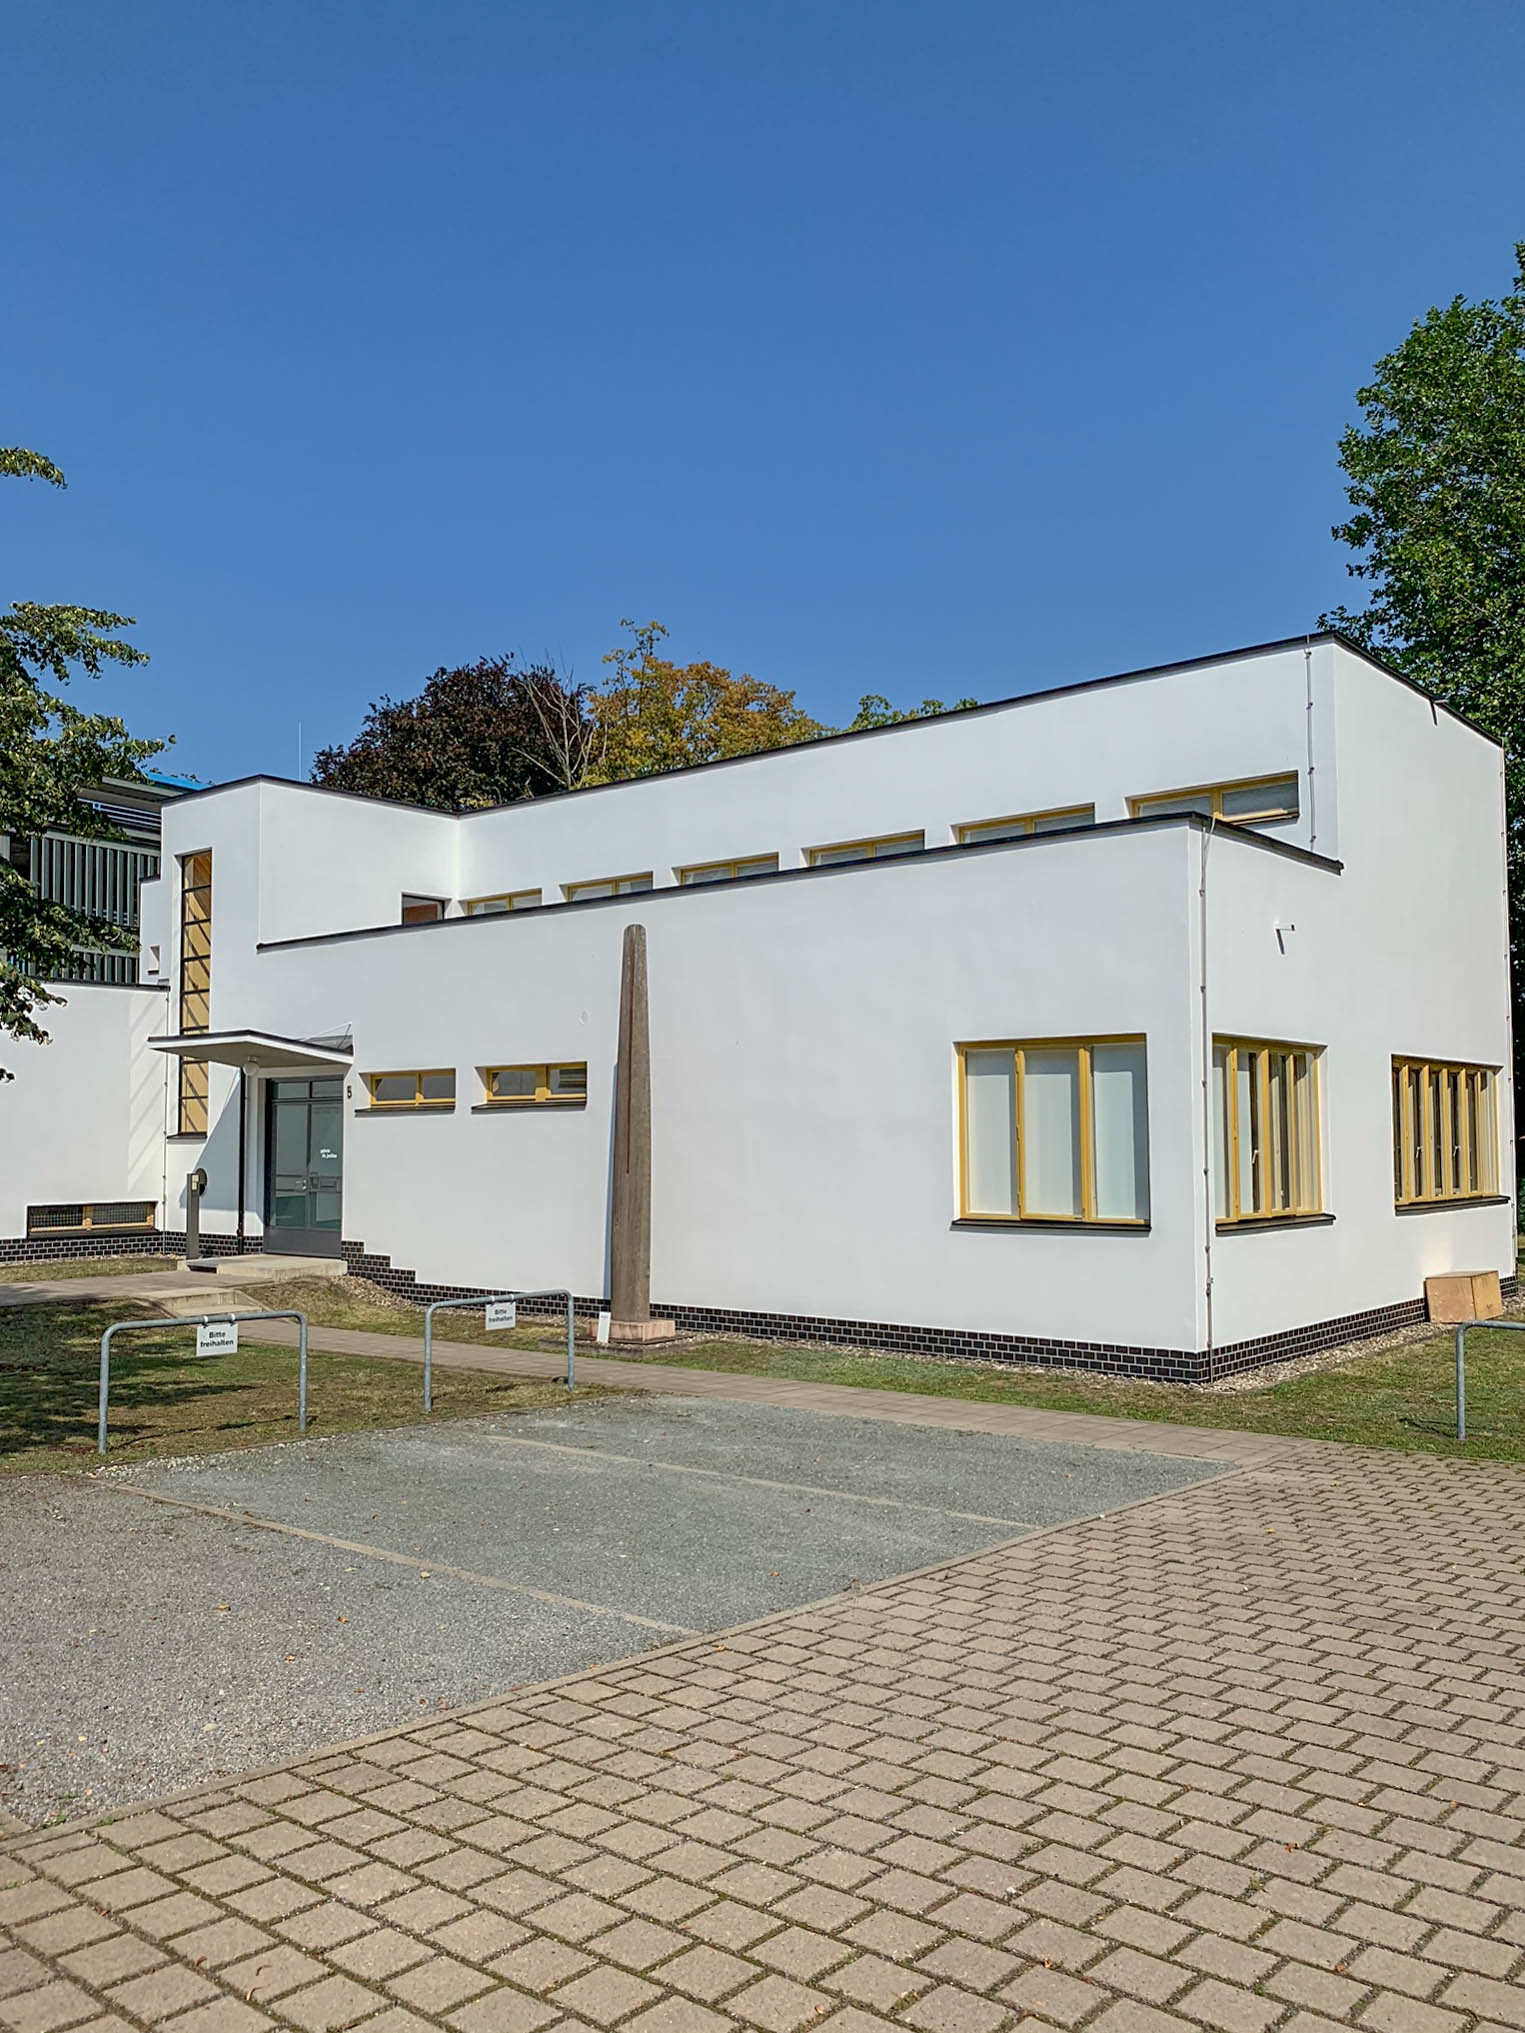 Direktorenwohnhaus, 1930-1931. Architekt: Otto Haesler. Foto: Daniela Christmann